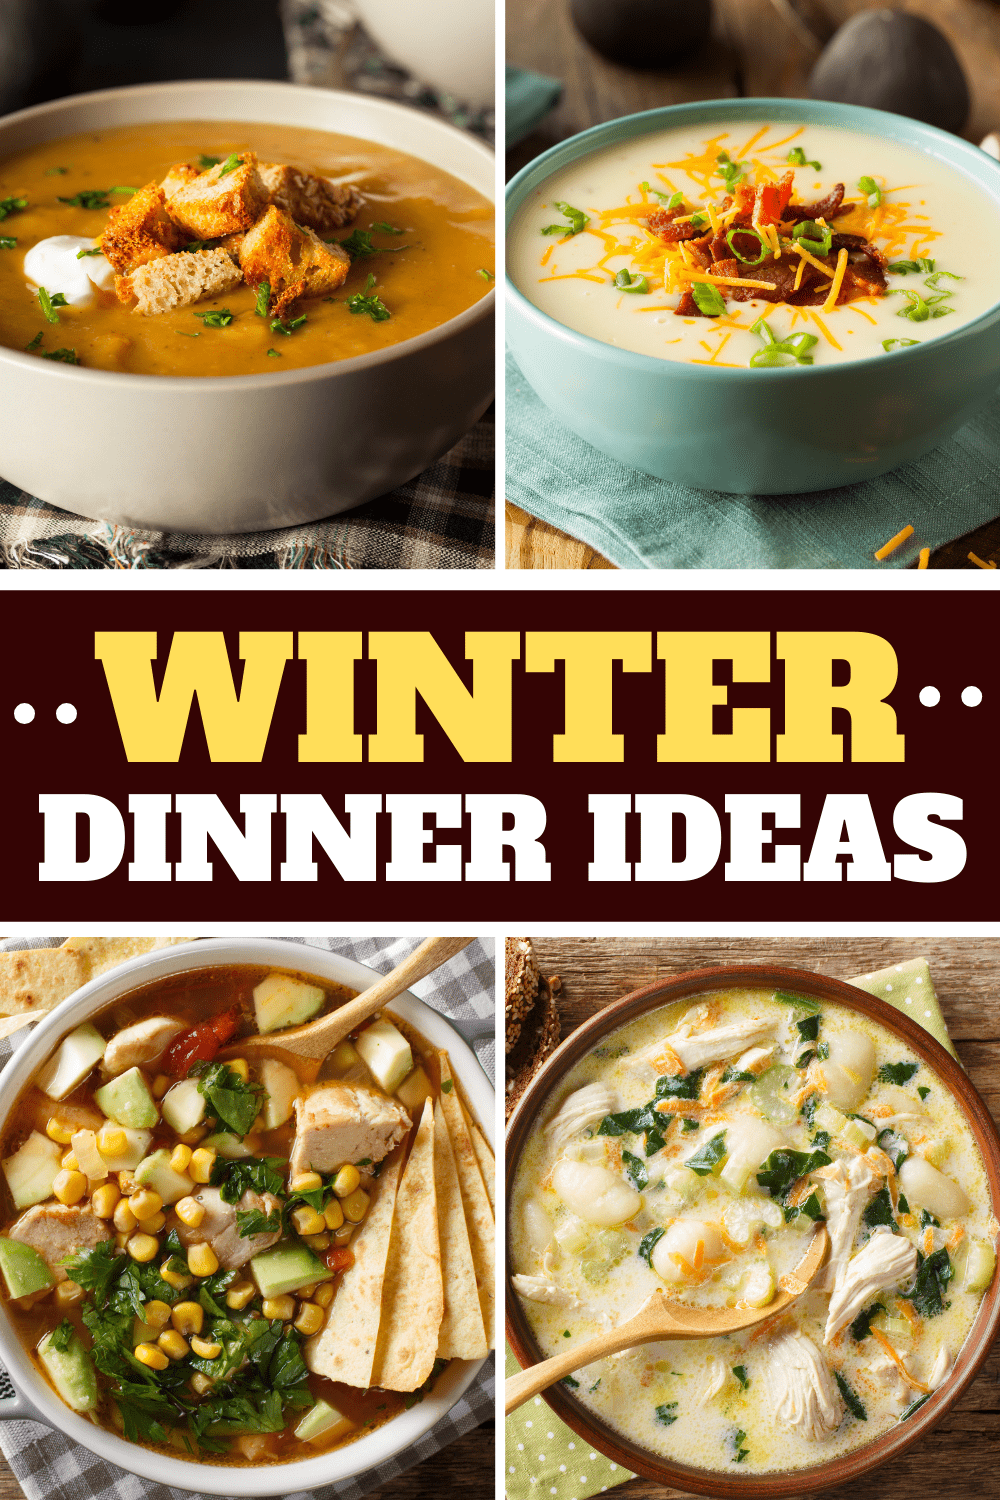 Winter Dinner Ideas 1 